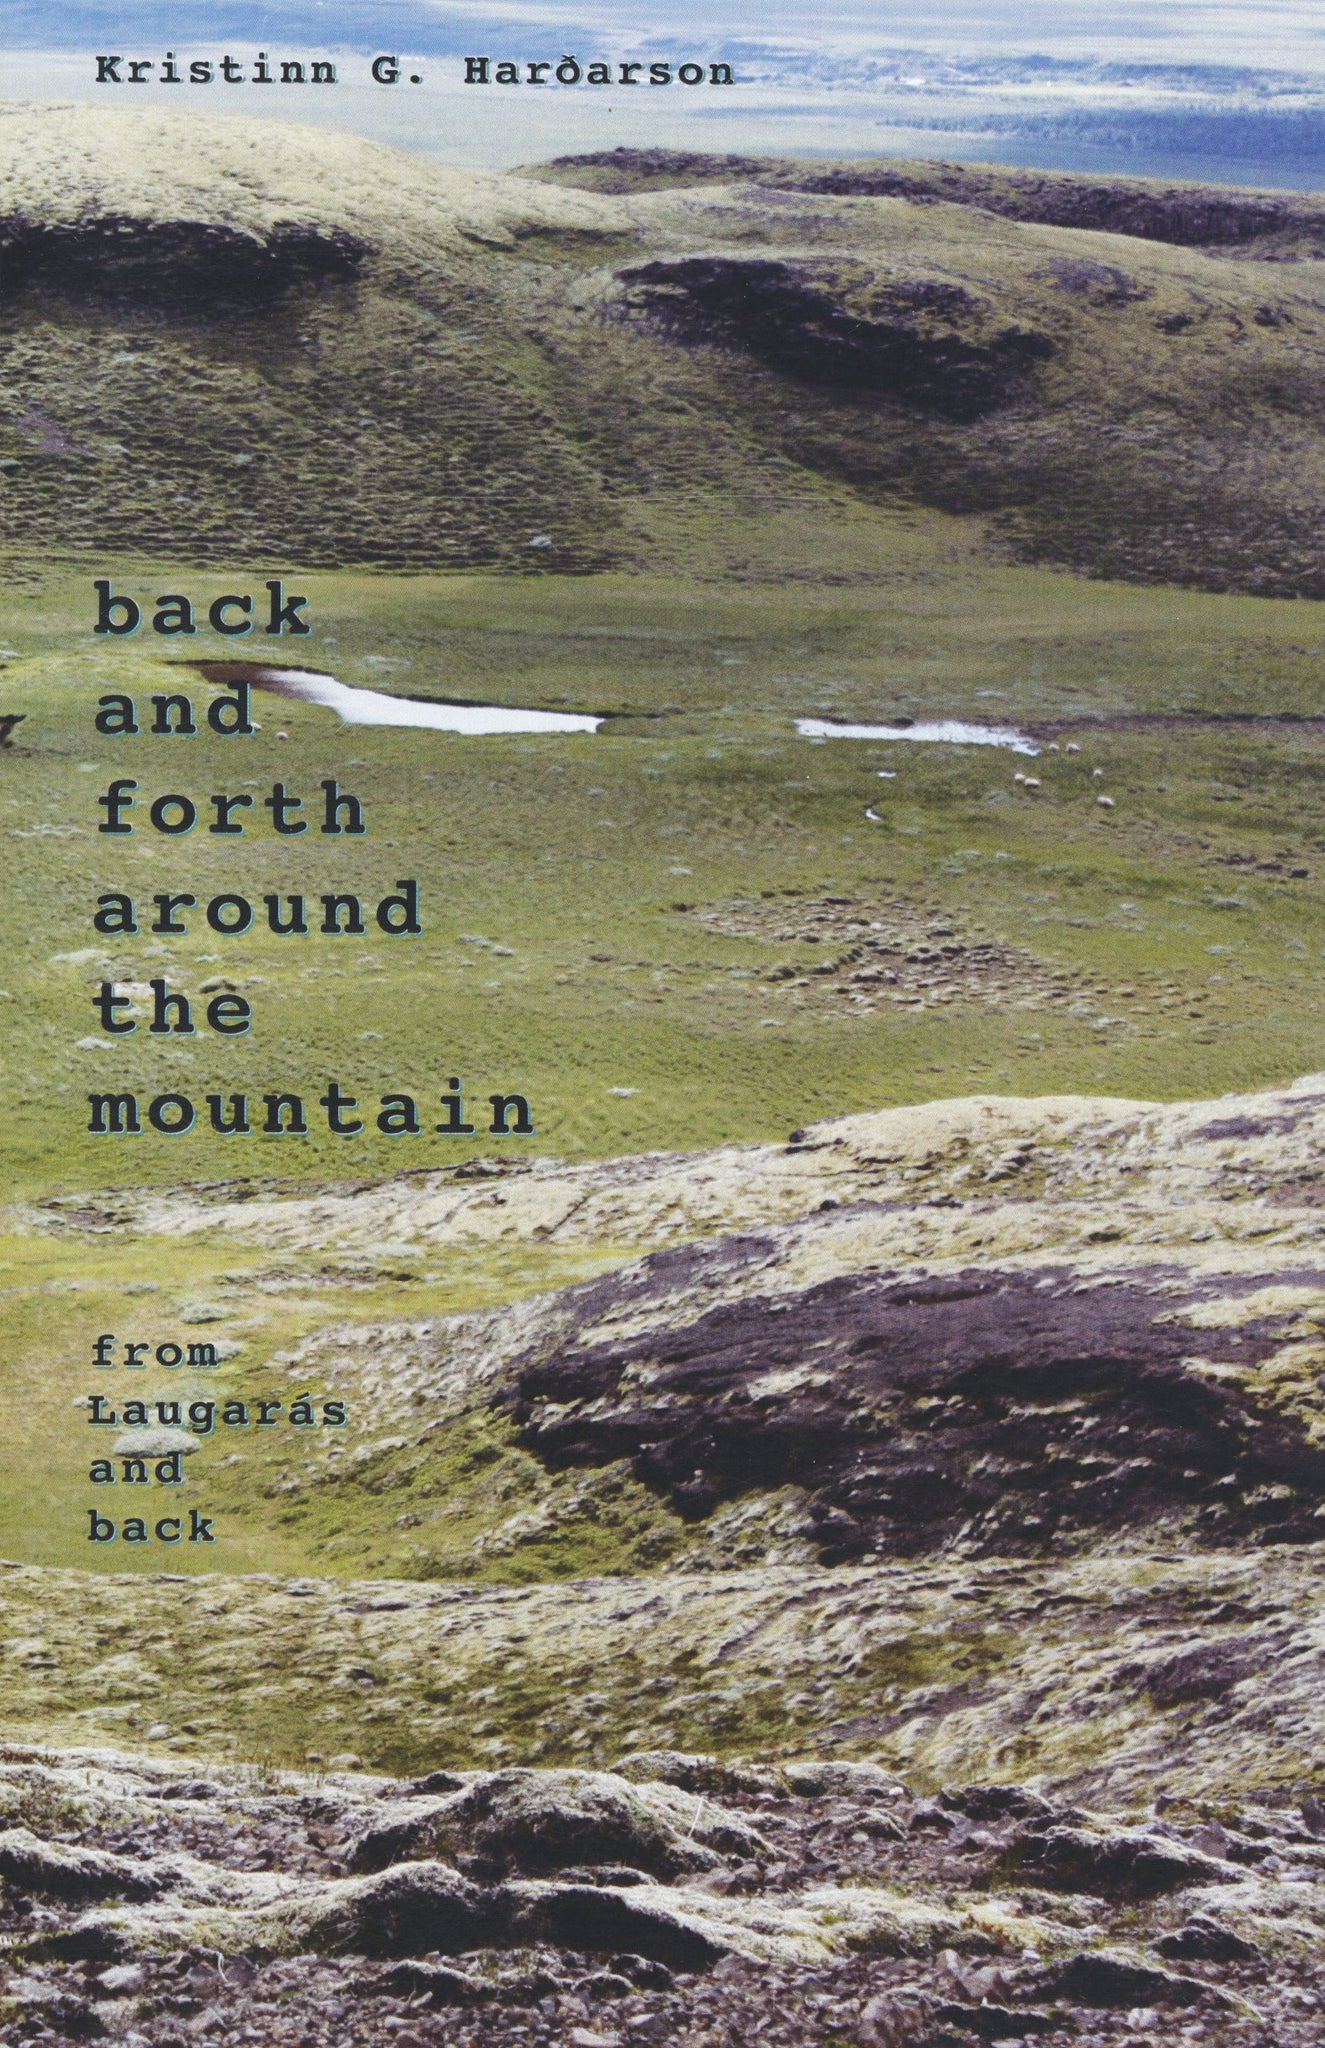 fram og aftur um fjallið/ back and forth around the mountain